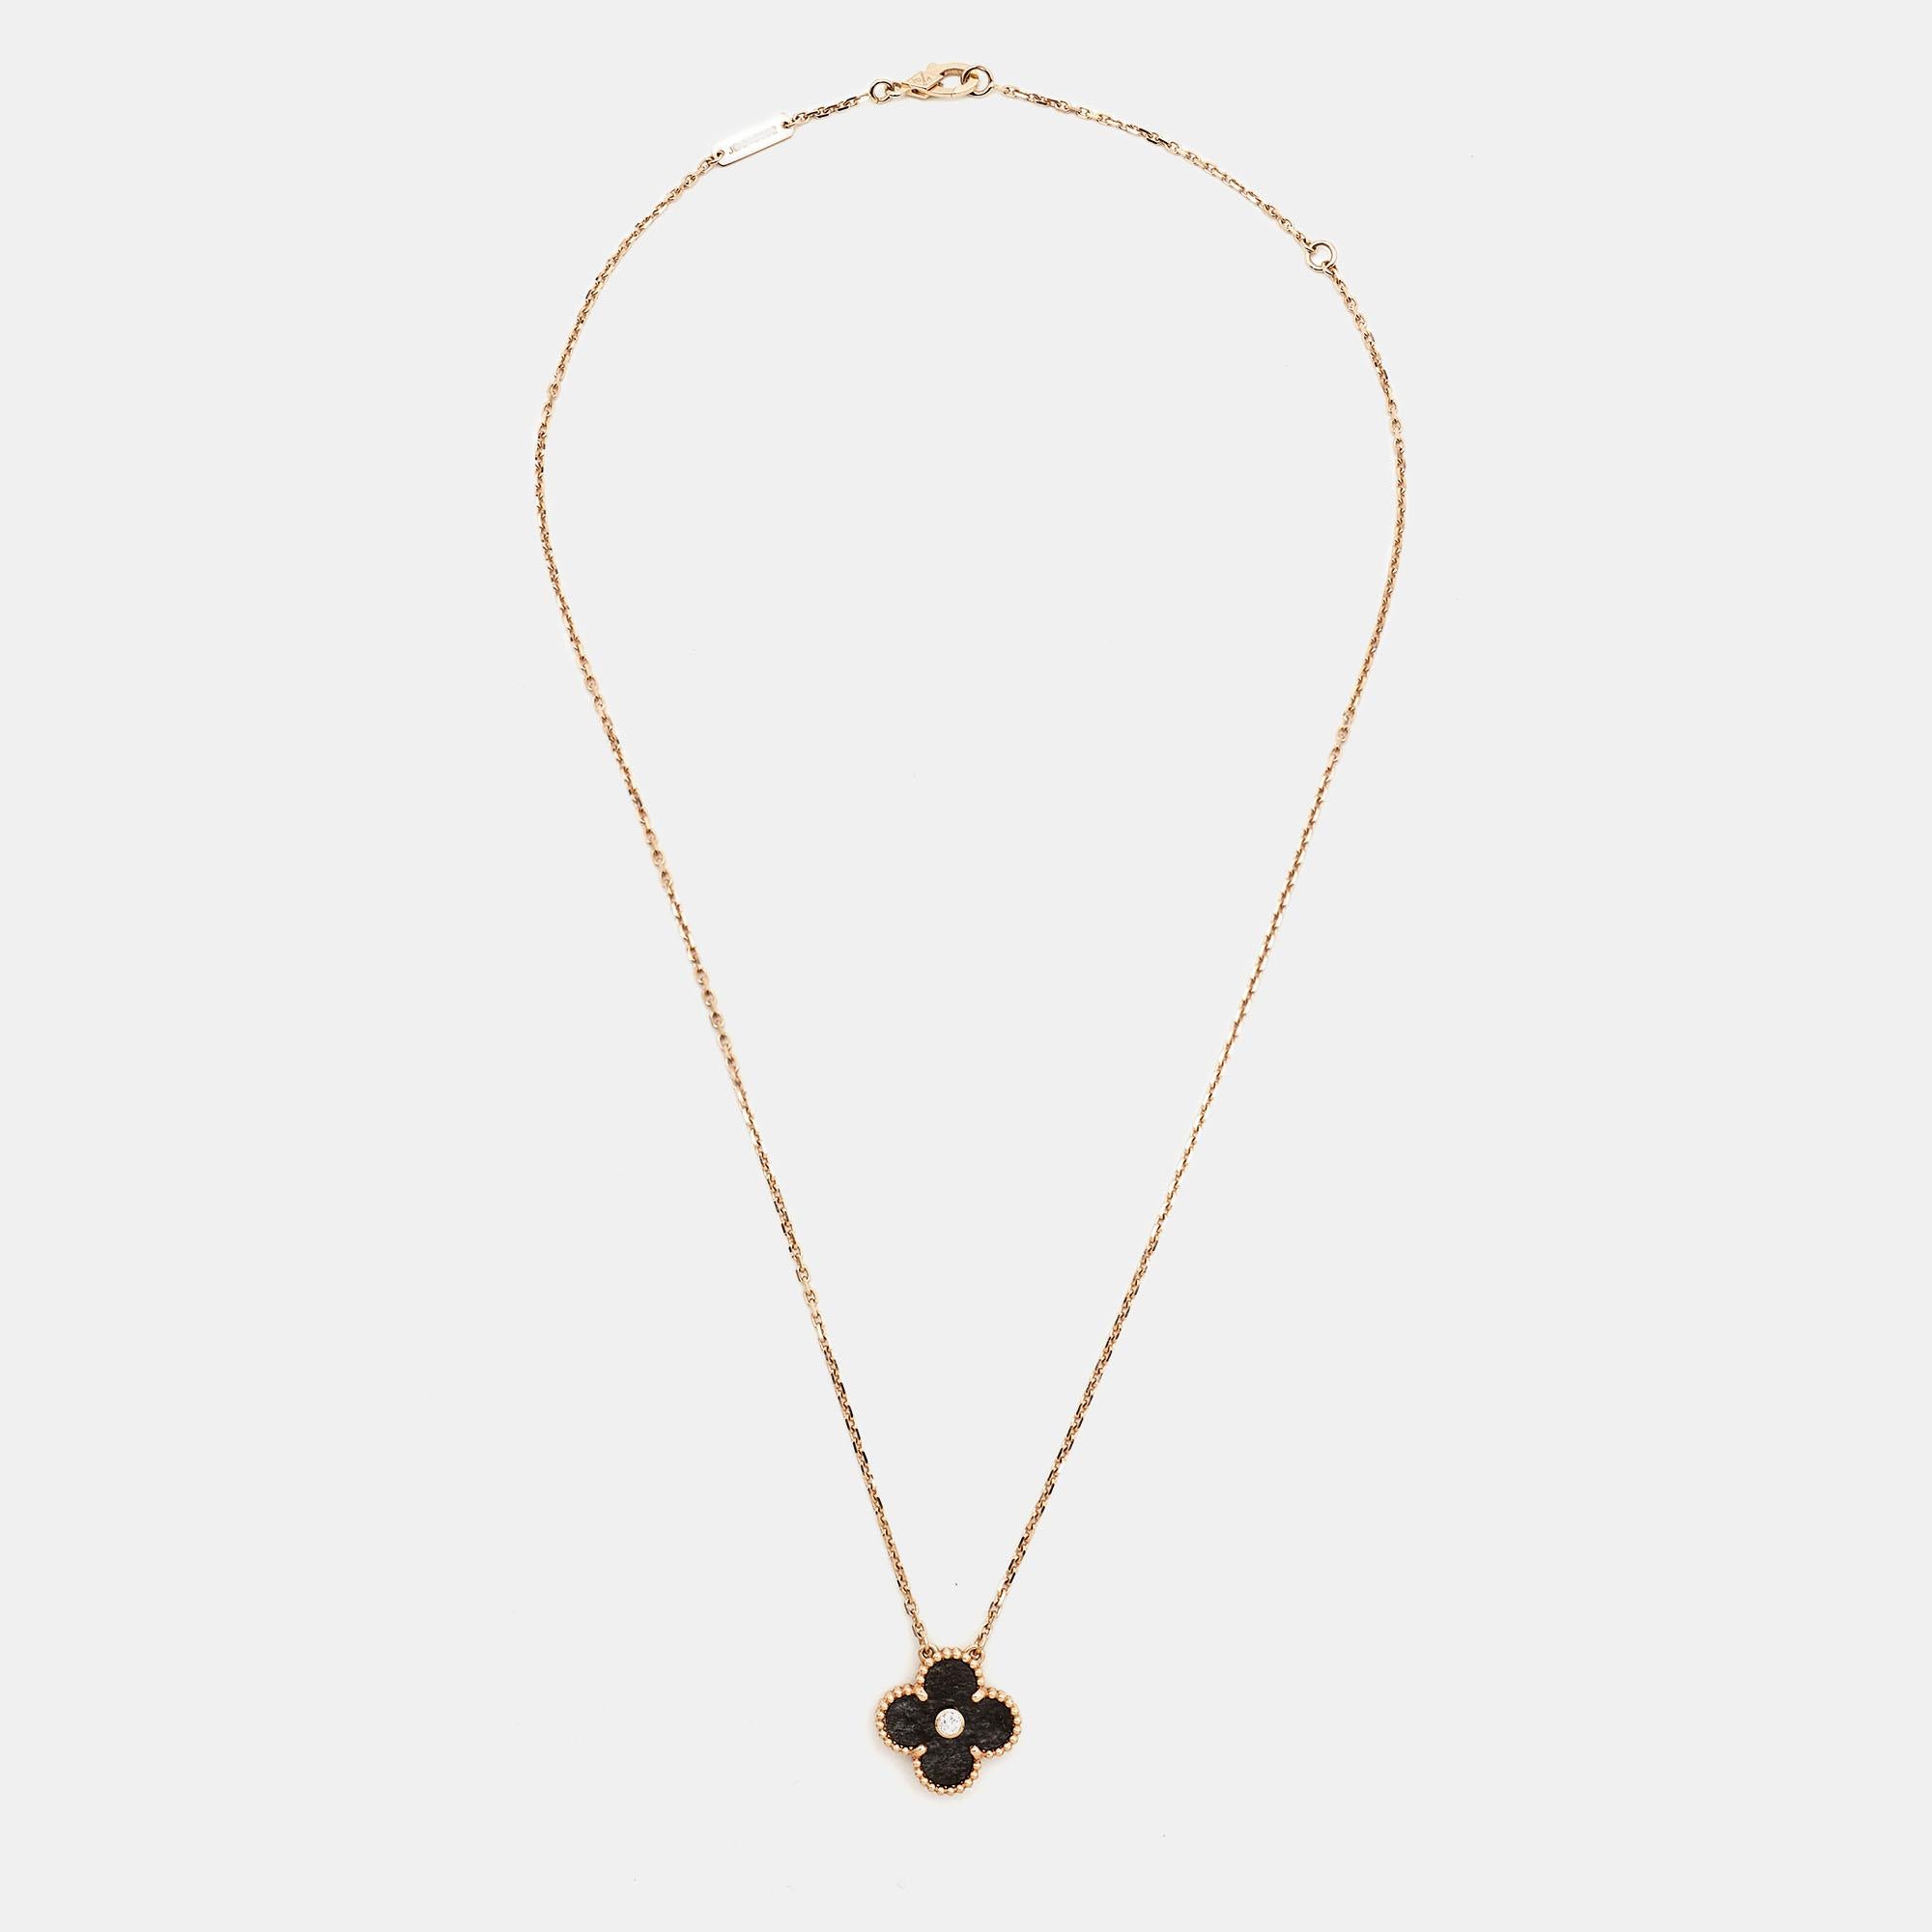 Investissez dans ce collier pendentif opulent Van Cleef and Arpels 2021 Collection Vintage Alhambra. Le pendentif Alhambra en or rose 18 carats est serti d'un seul diamant et retenu par une chaîne. Un doux mélange de style minimaliste et d'élégance